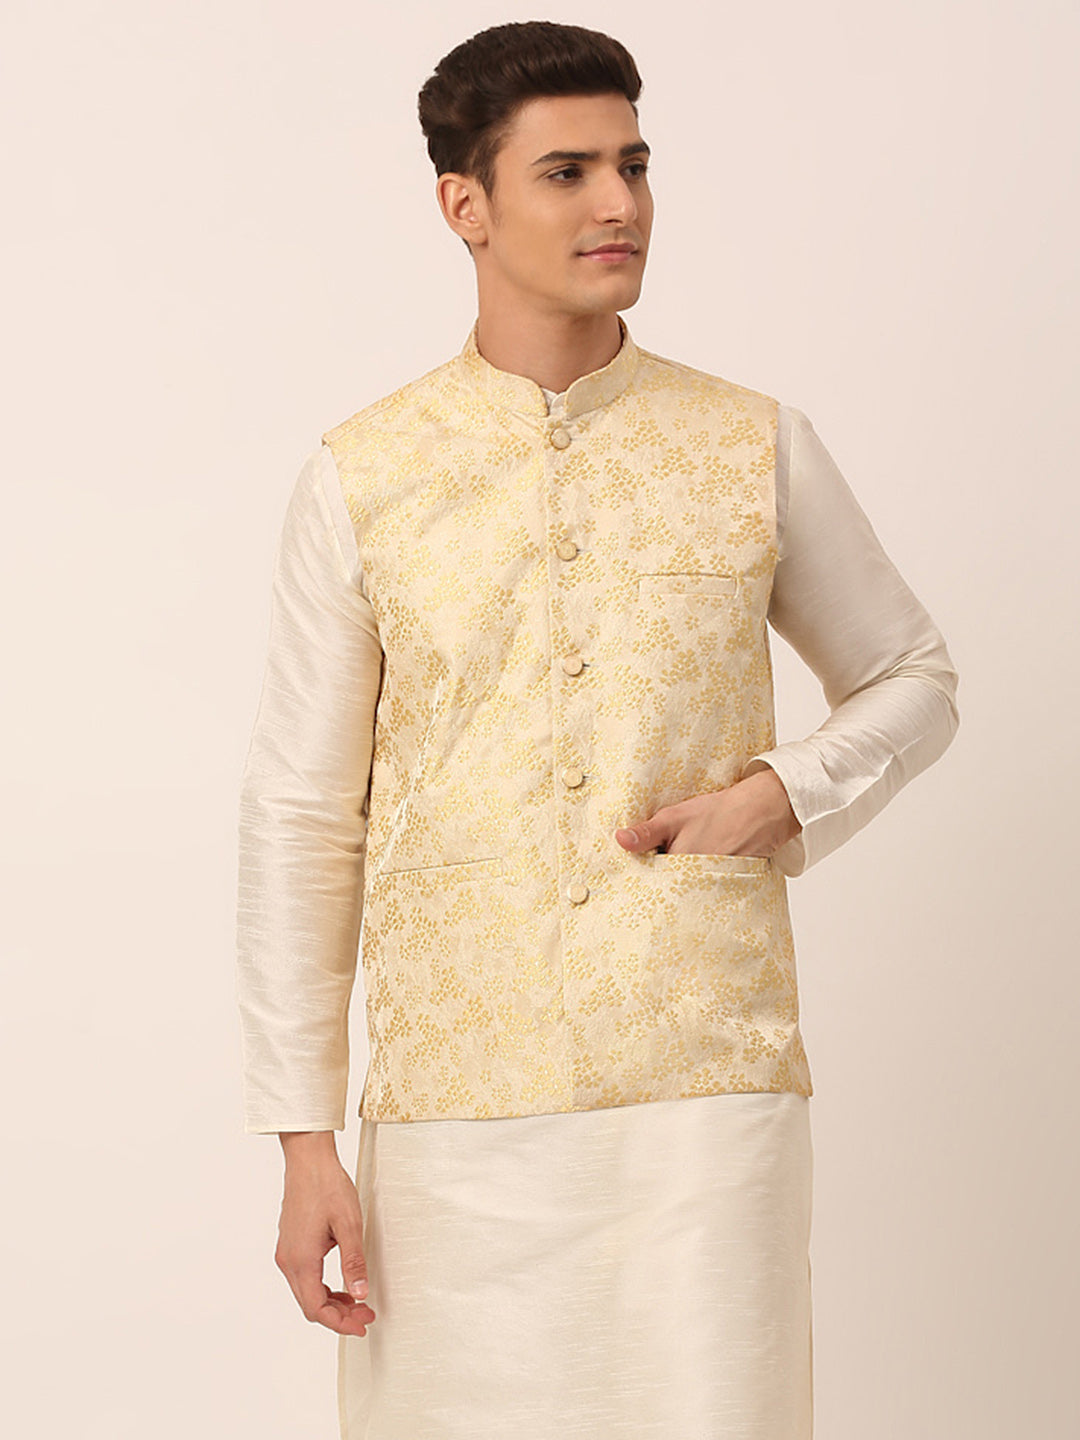 Men's Golden Floral Design Nehru Jacket.